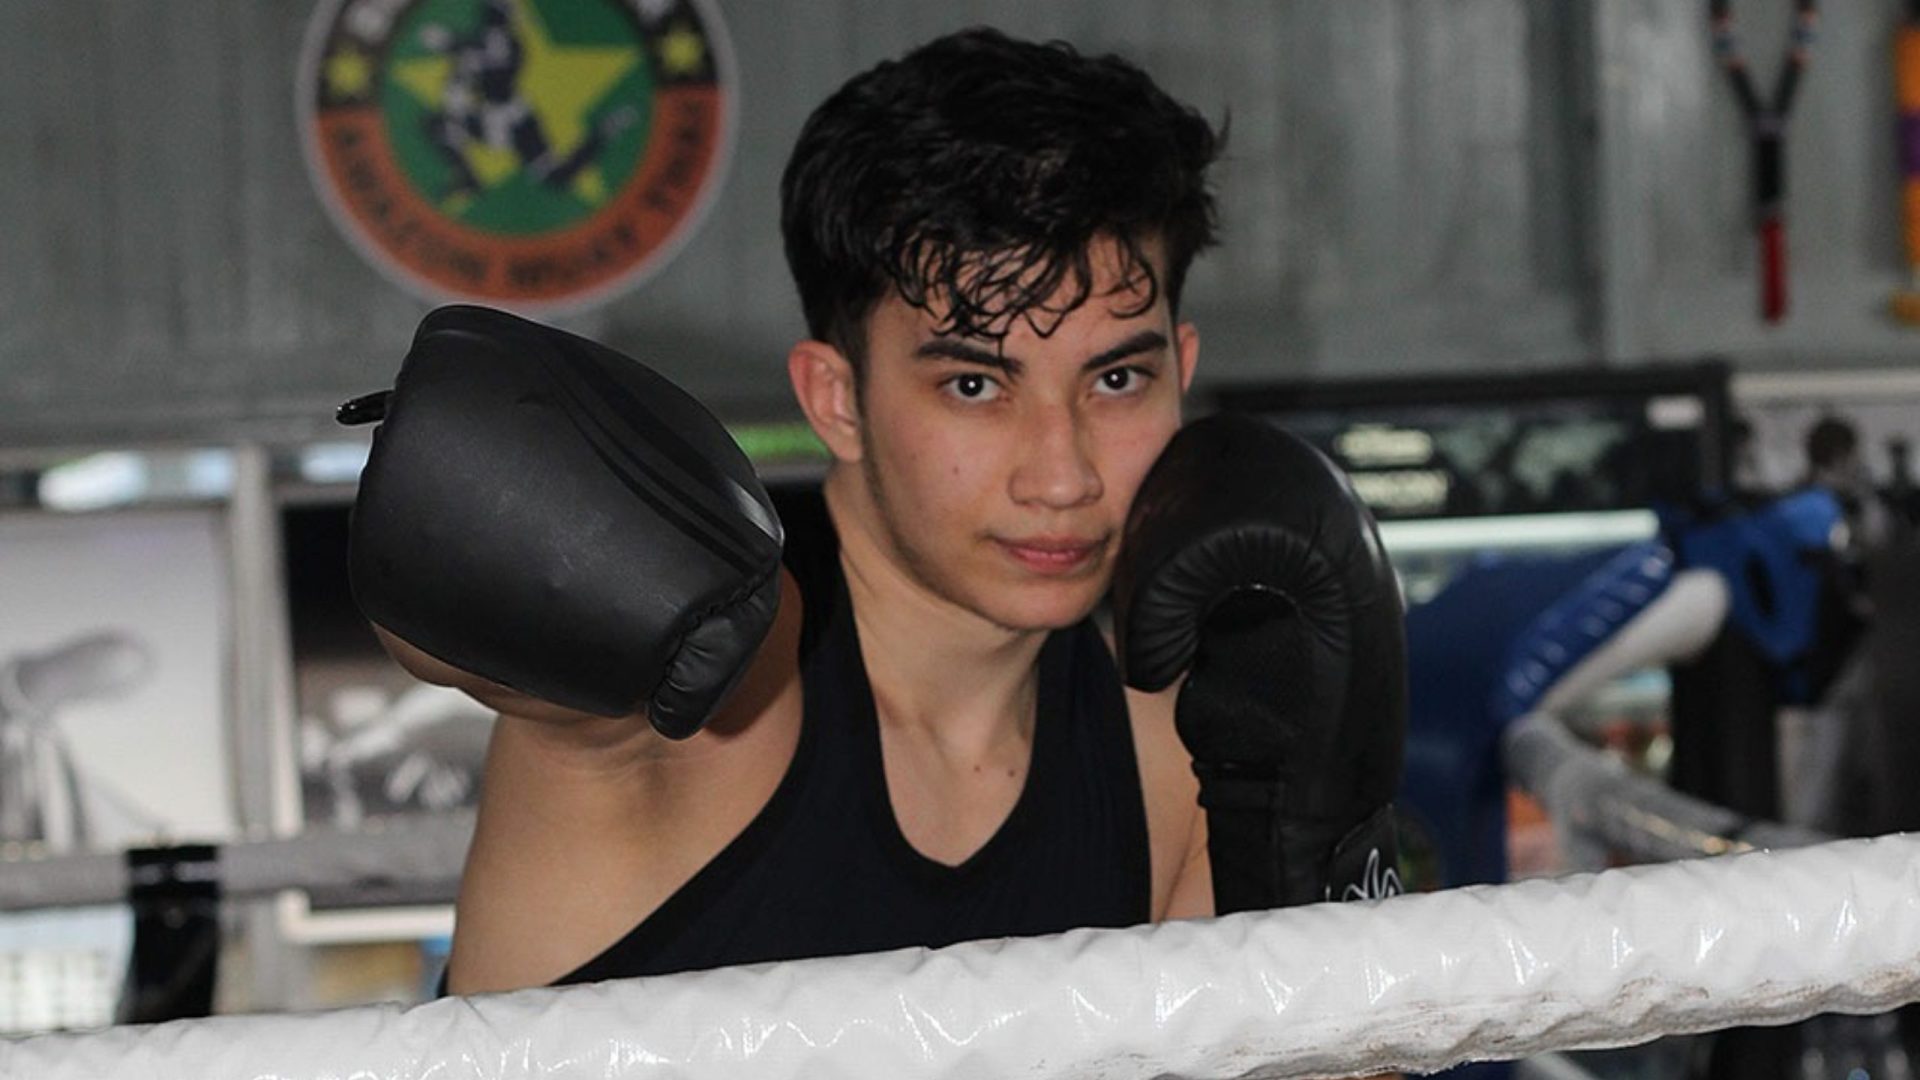 Jovem supera depressão, vira campeão de muay thai, estreia no boxe em Manaus - Foto: Divulgação/Leandro Tapajós/Black River